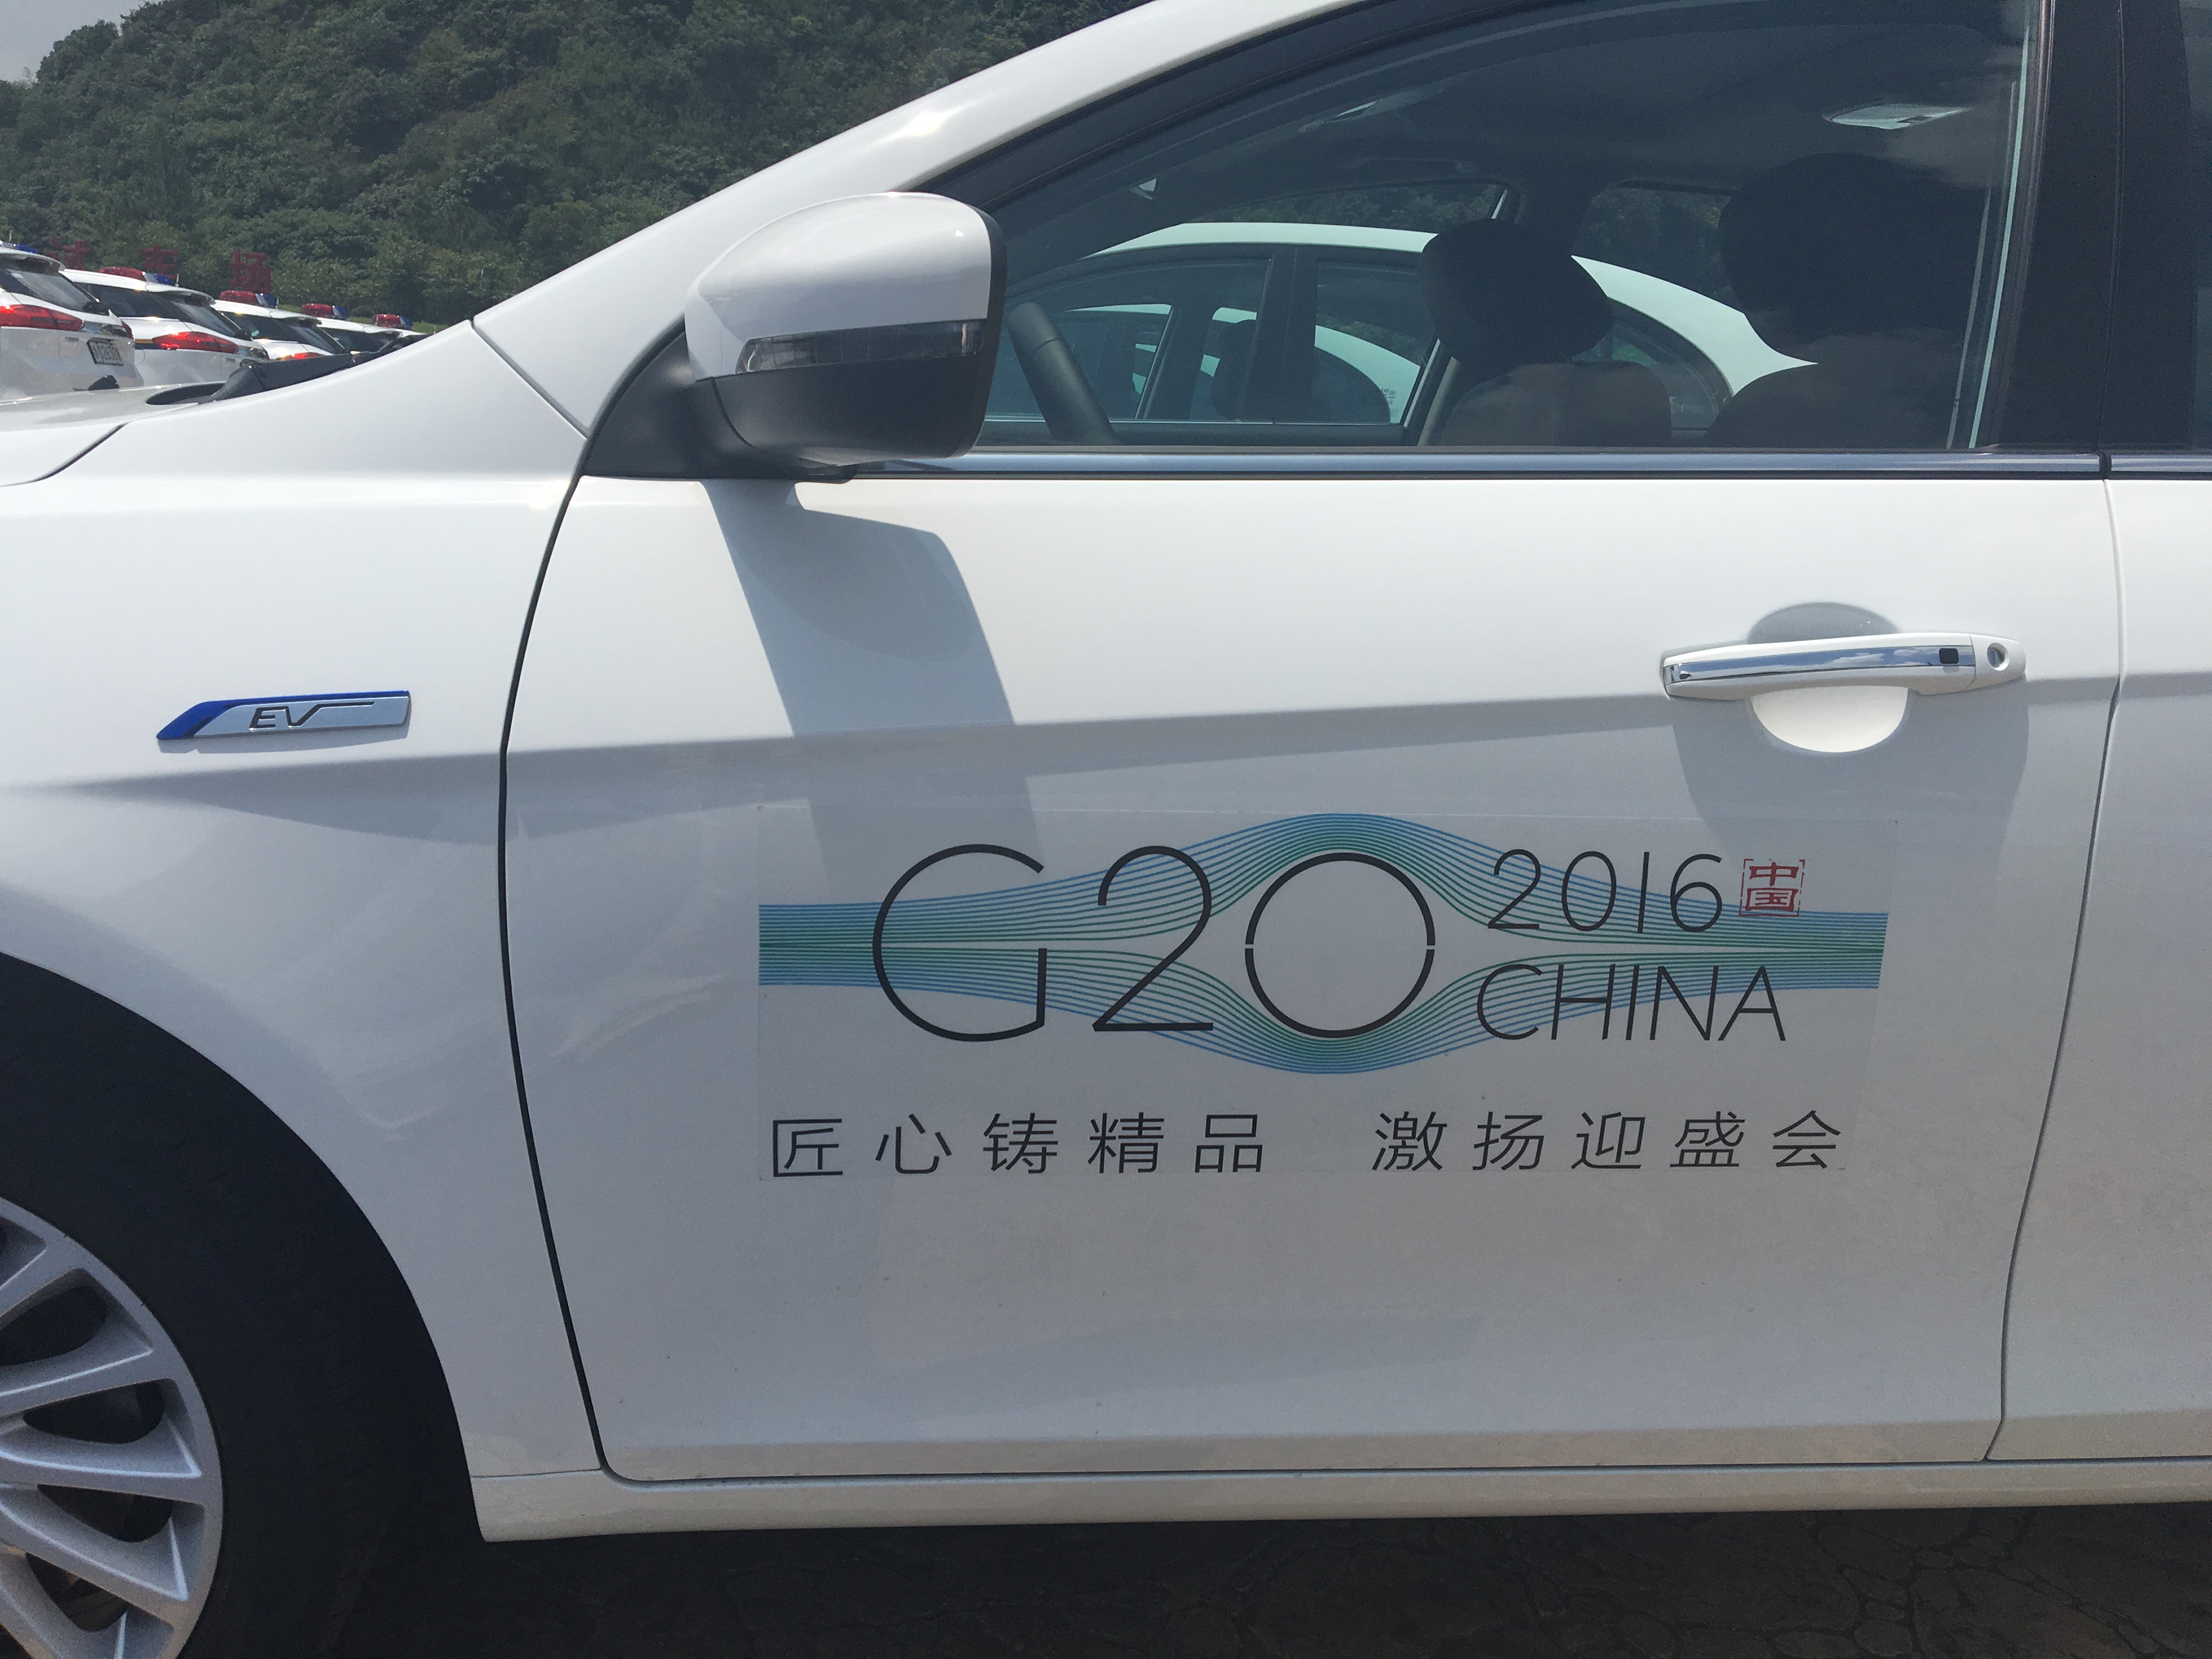 G20峰会指定用车.jpg